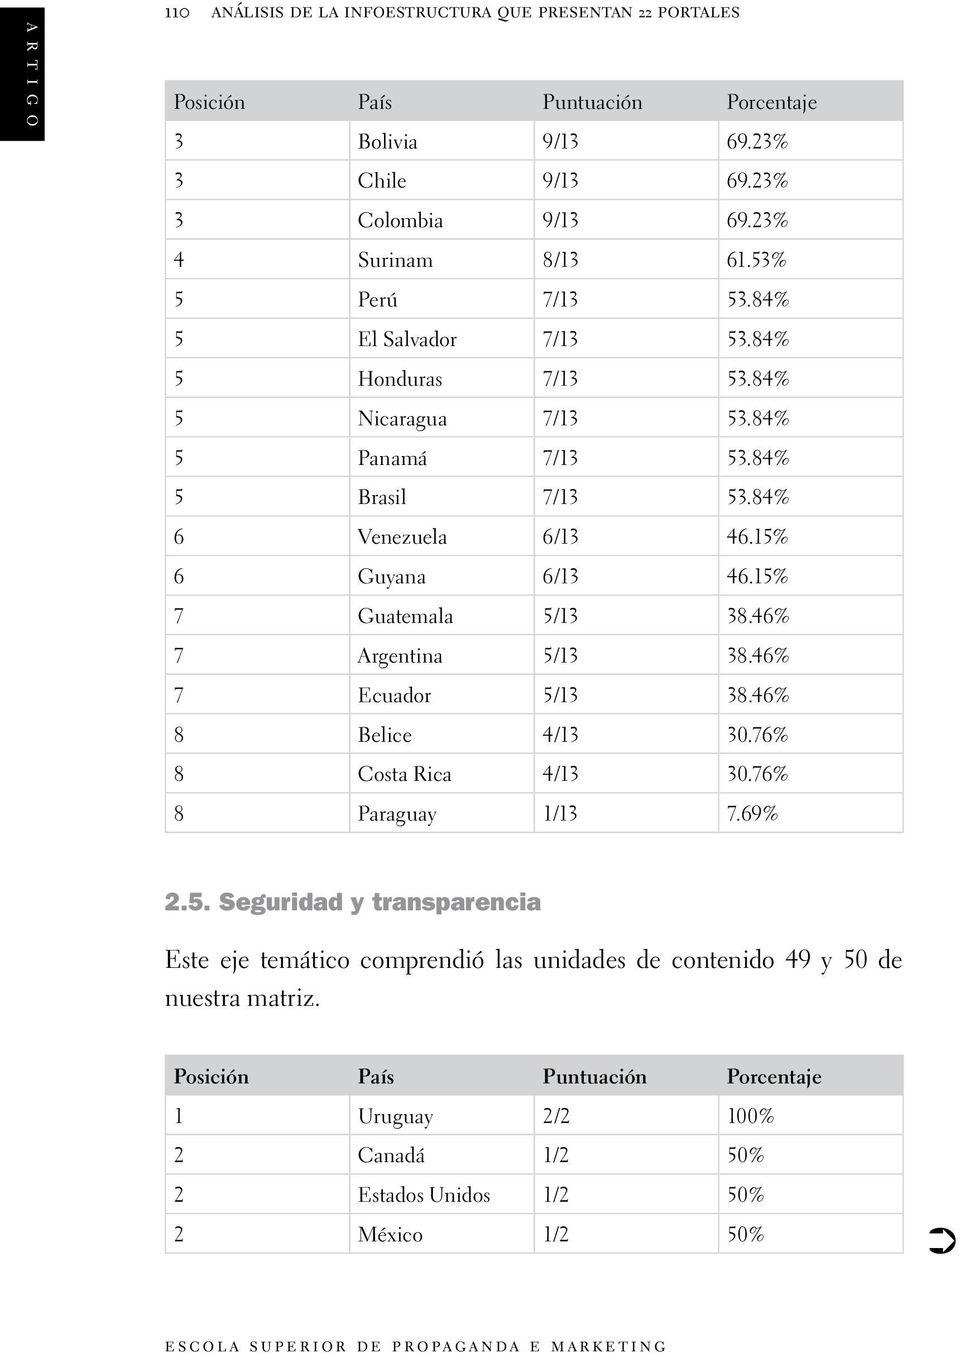 46% 7 Argentina 5/13 38.46% 7 Ecuador 5/13 38.46% 8 Belice 4/13 30.76% 8 Costa Rica 4/13 30.76% 8 Paraguay 1/13 7.69% 2.5. Seguridad y transparencia Este eje temático comprendió las unidades de contenido 49 y 50 de nuestra matriz.